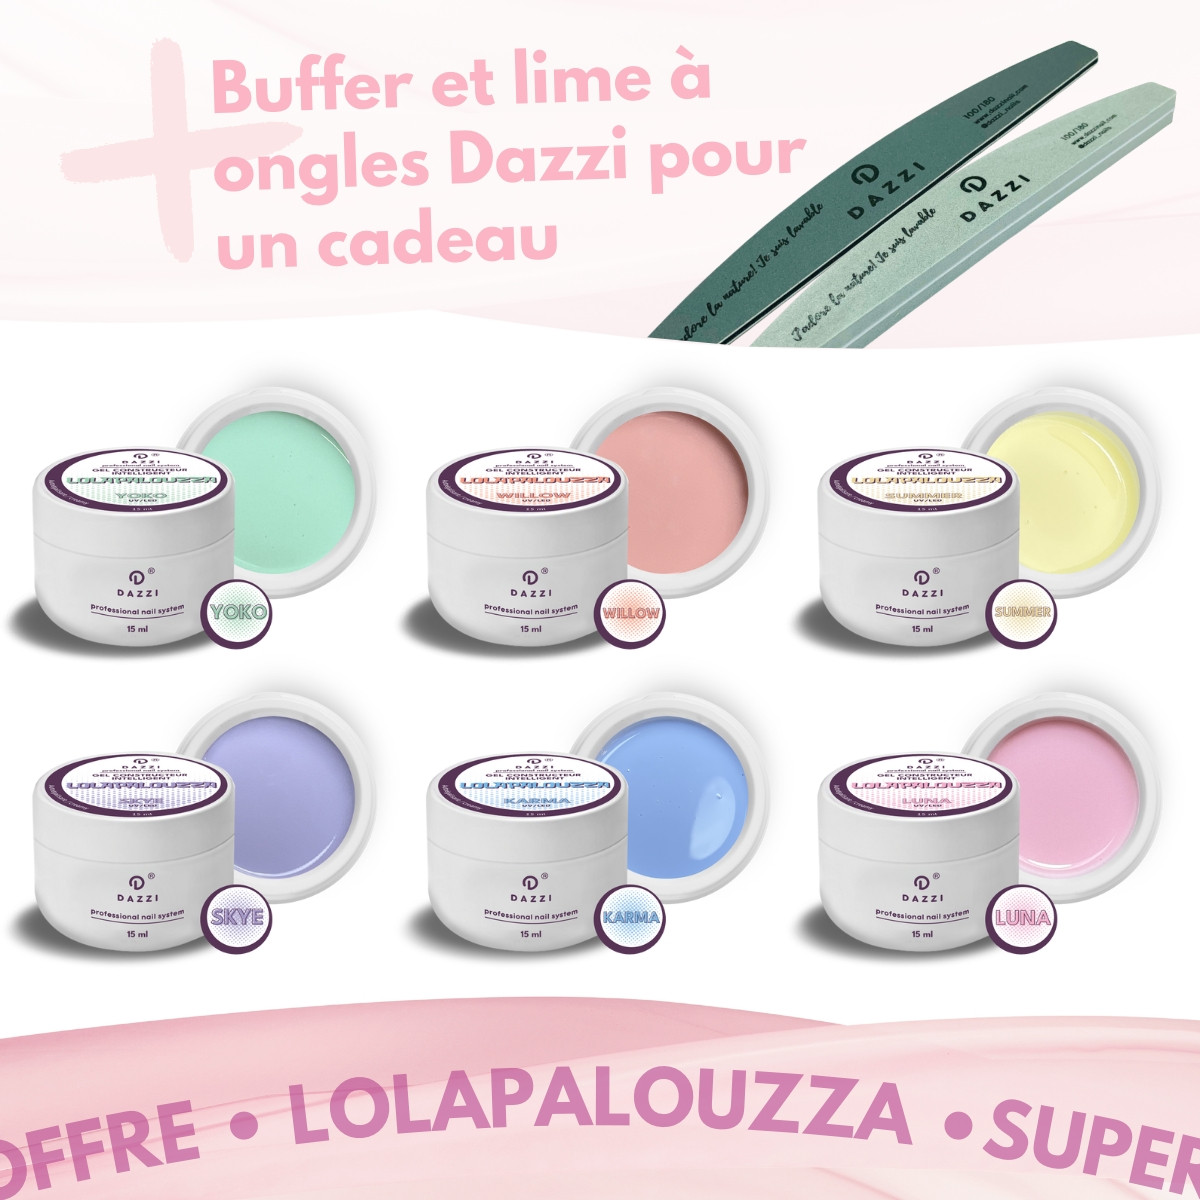 Collection "Lolapalouzza" : 6 gels constructeurs intelligents, 15 ml +lime et Buffer en cadeau